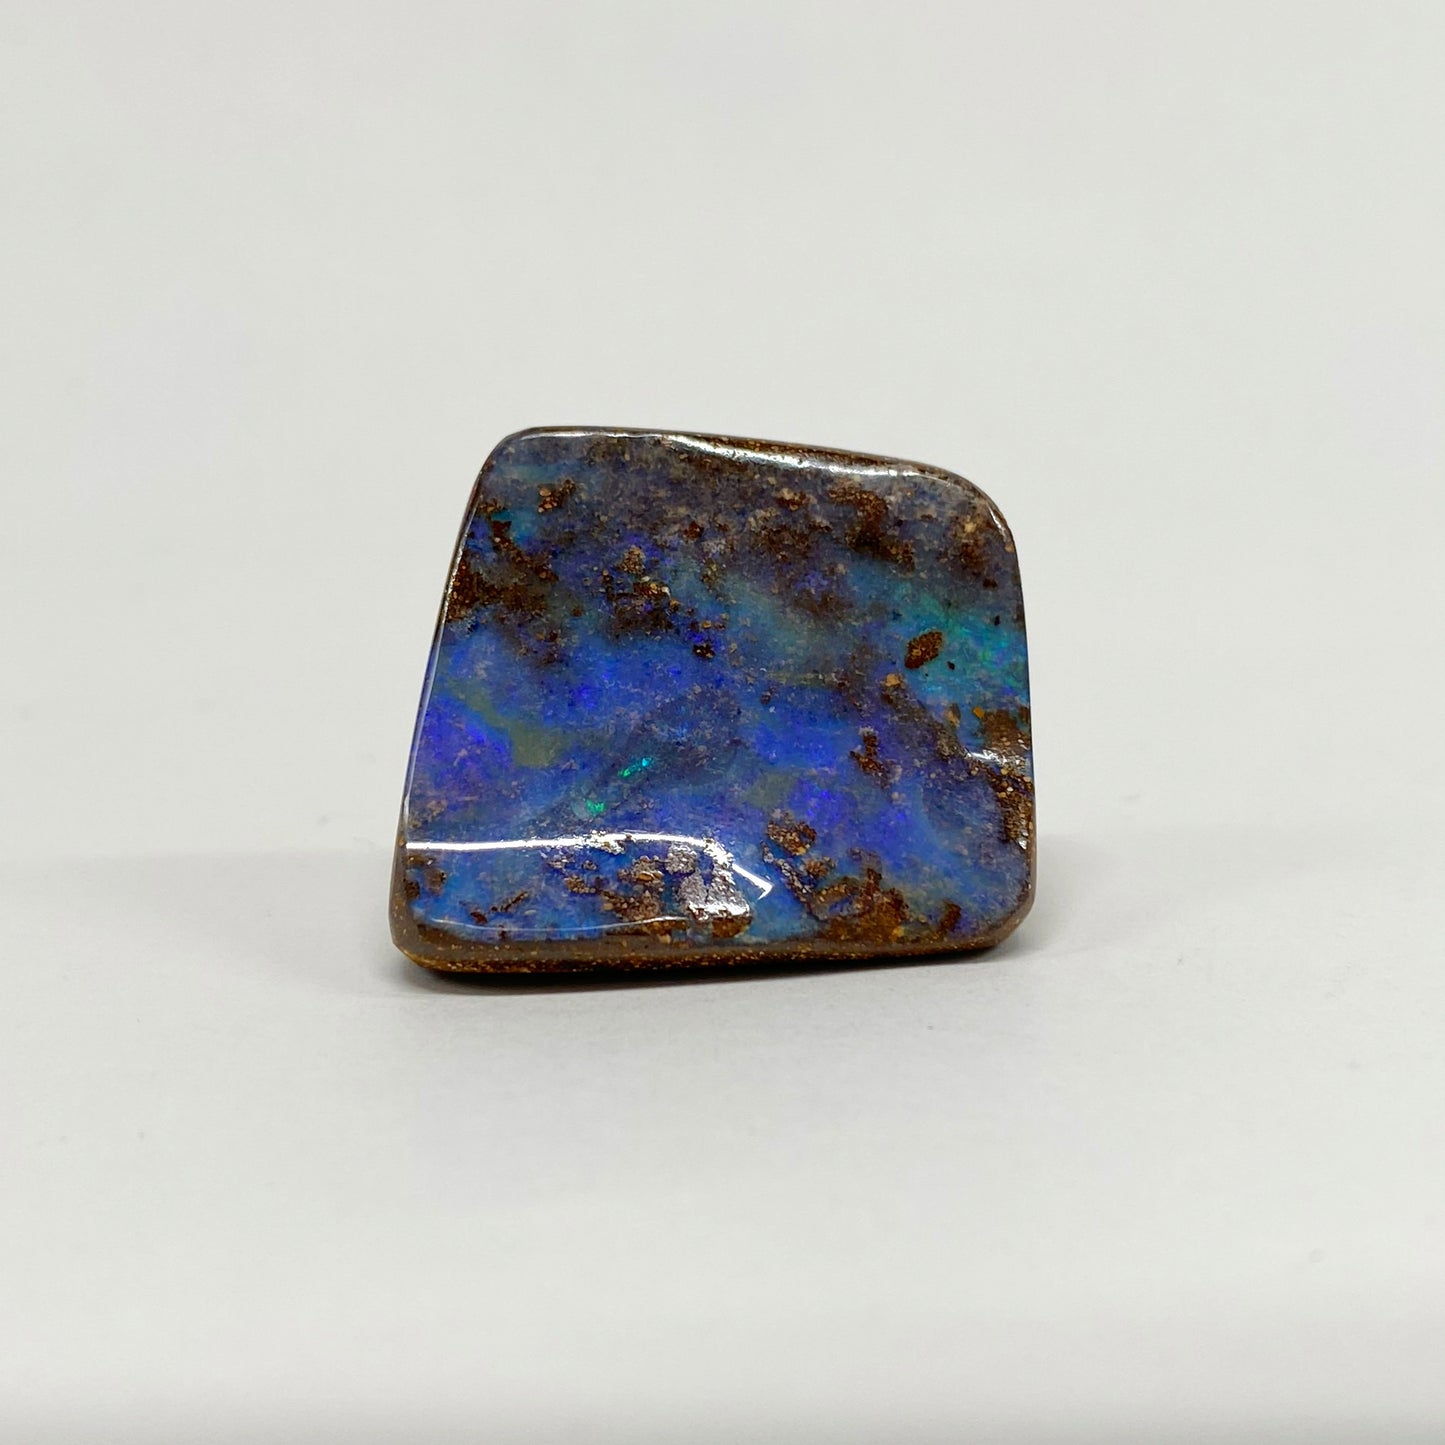 100 Ct green-blue boulder opal specimen